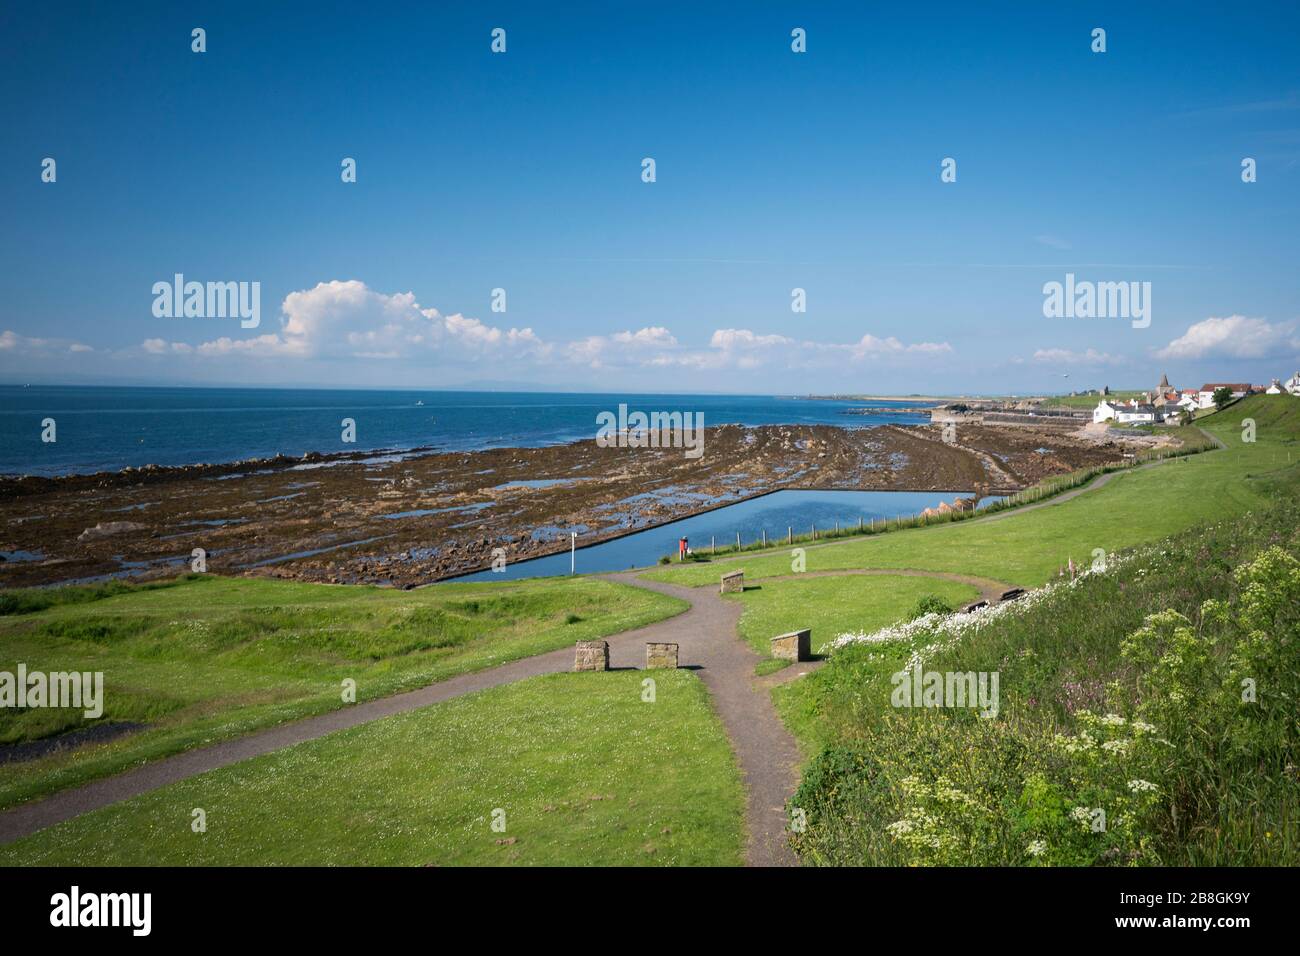 Villaggio di St. Monan dal mulino a vento sul sentiero costiero Fife, Scozia, Regno Unito, Europa Foto Stock